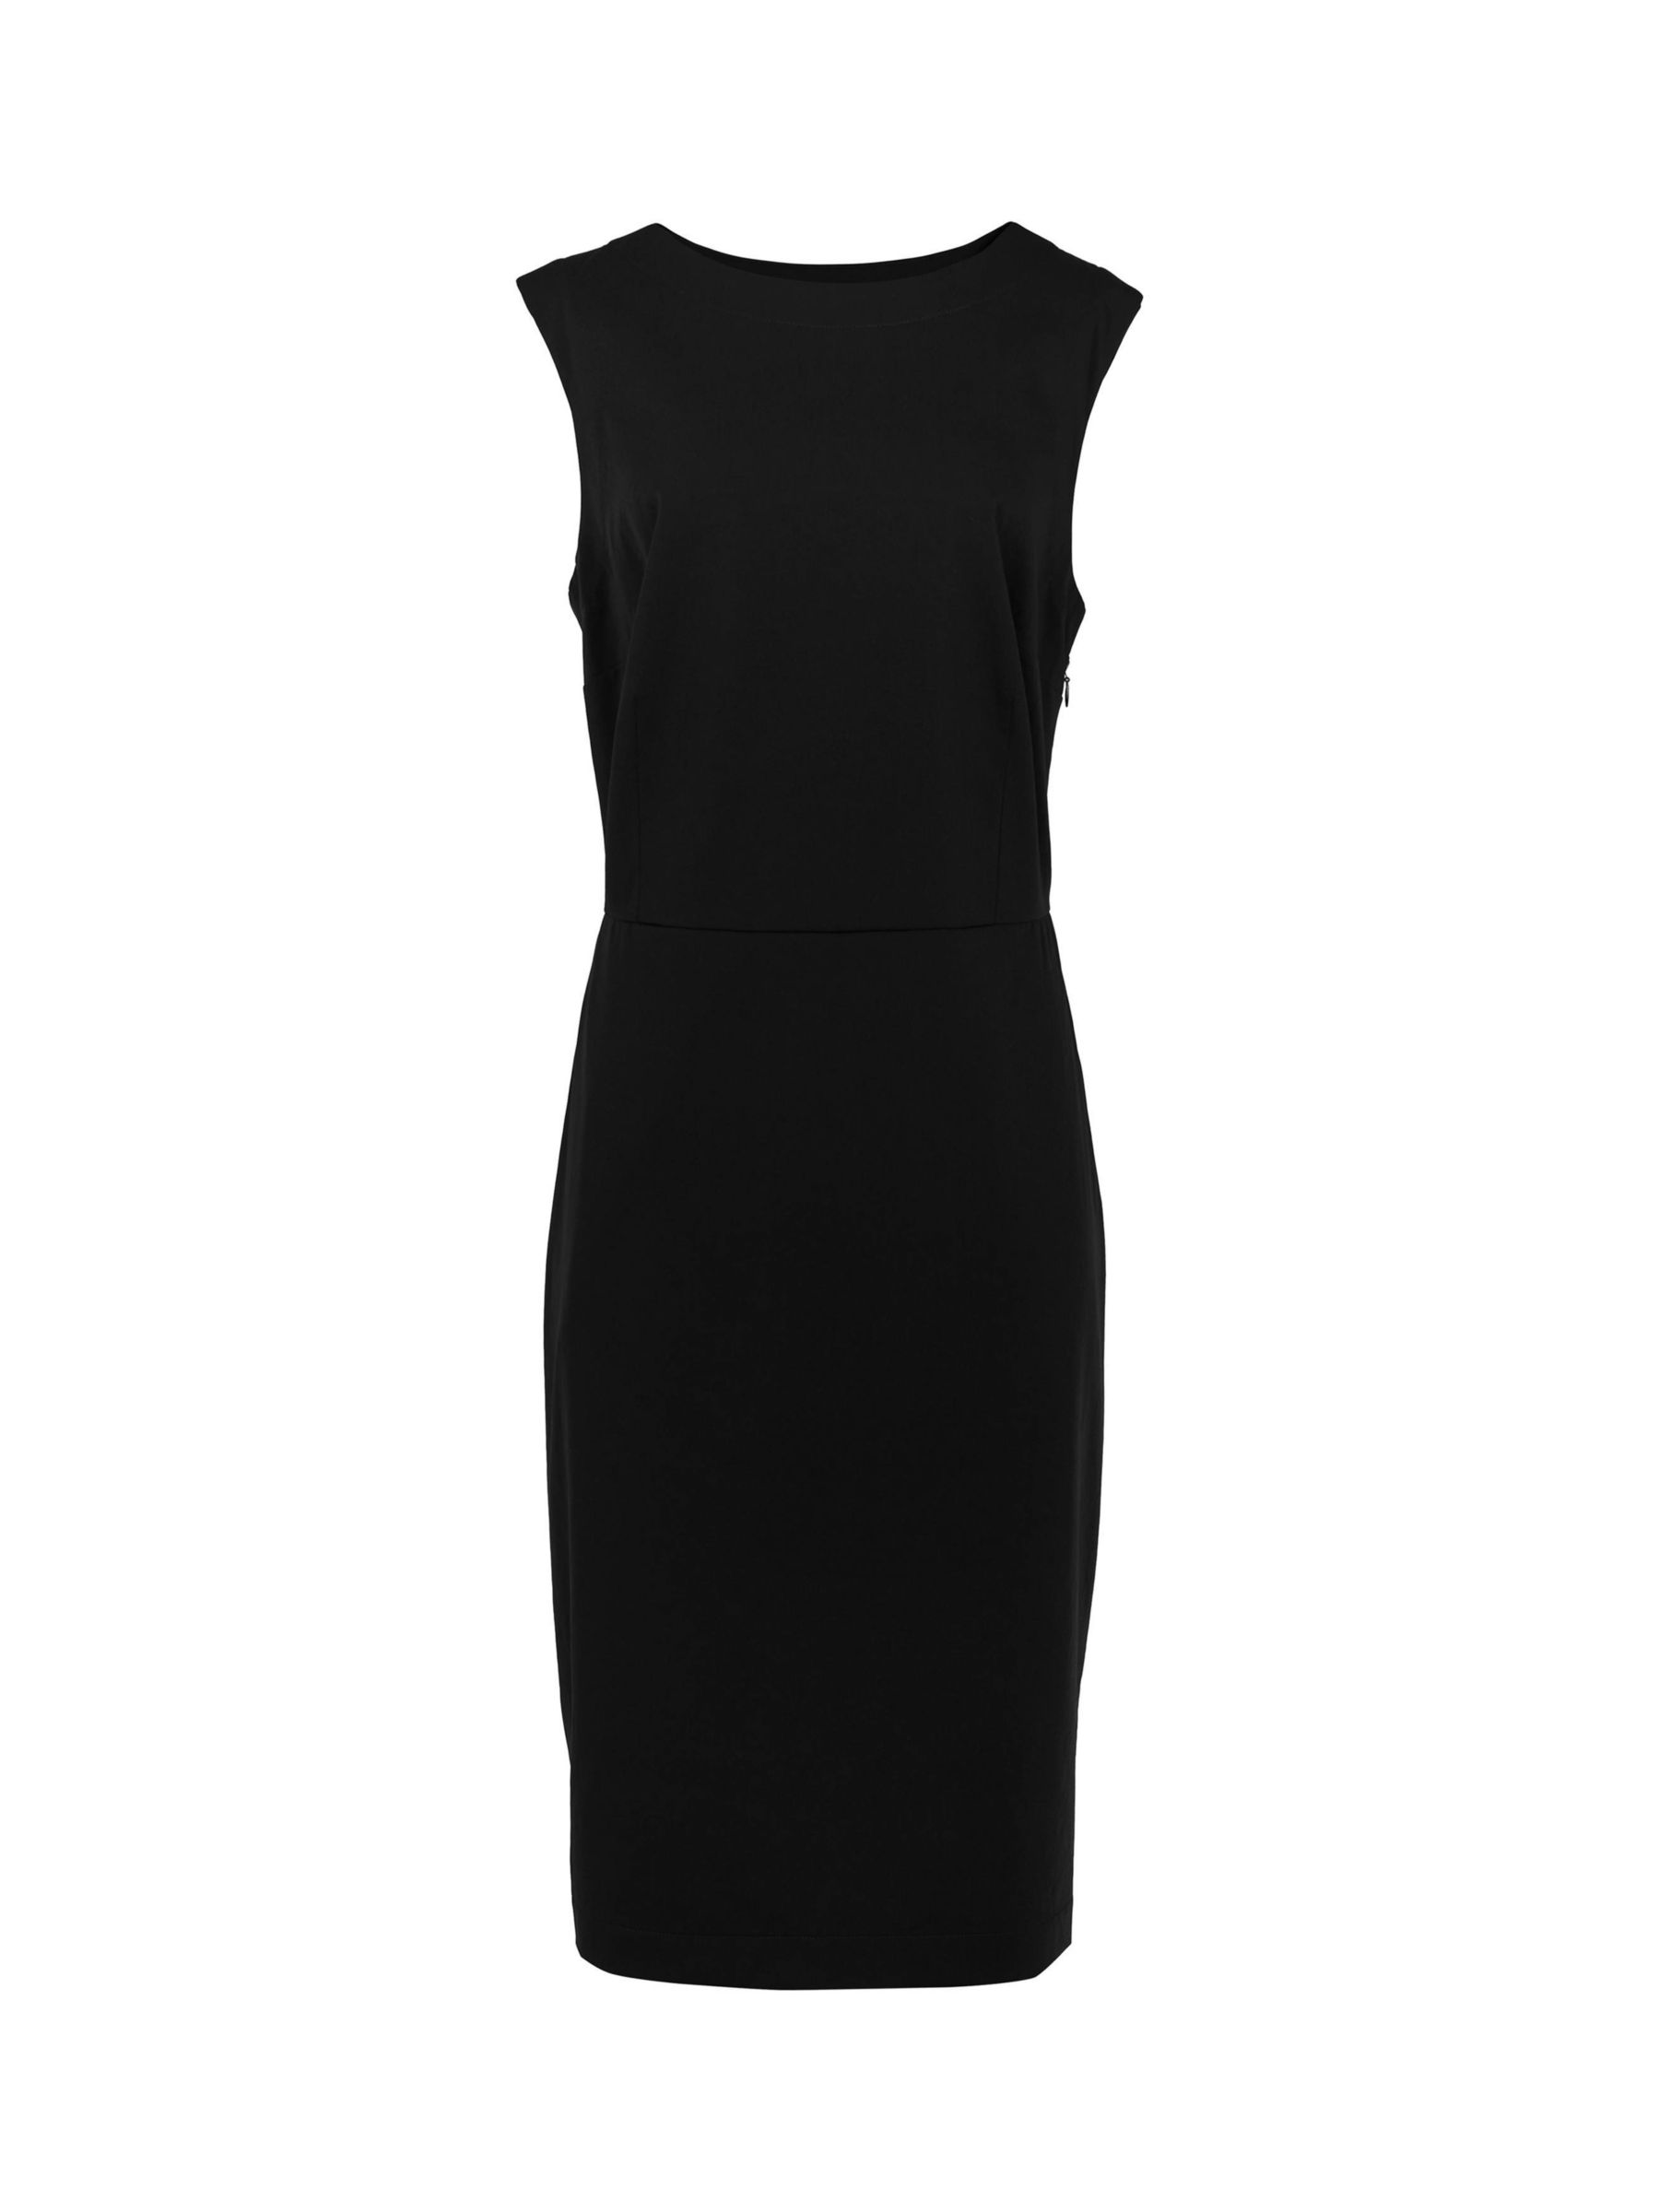 Buy Rohan Luna Knee Length Shift Dress, Black Online at johnlewis.com